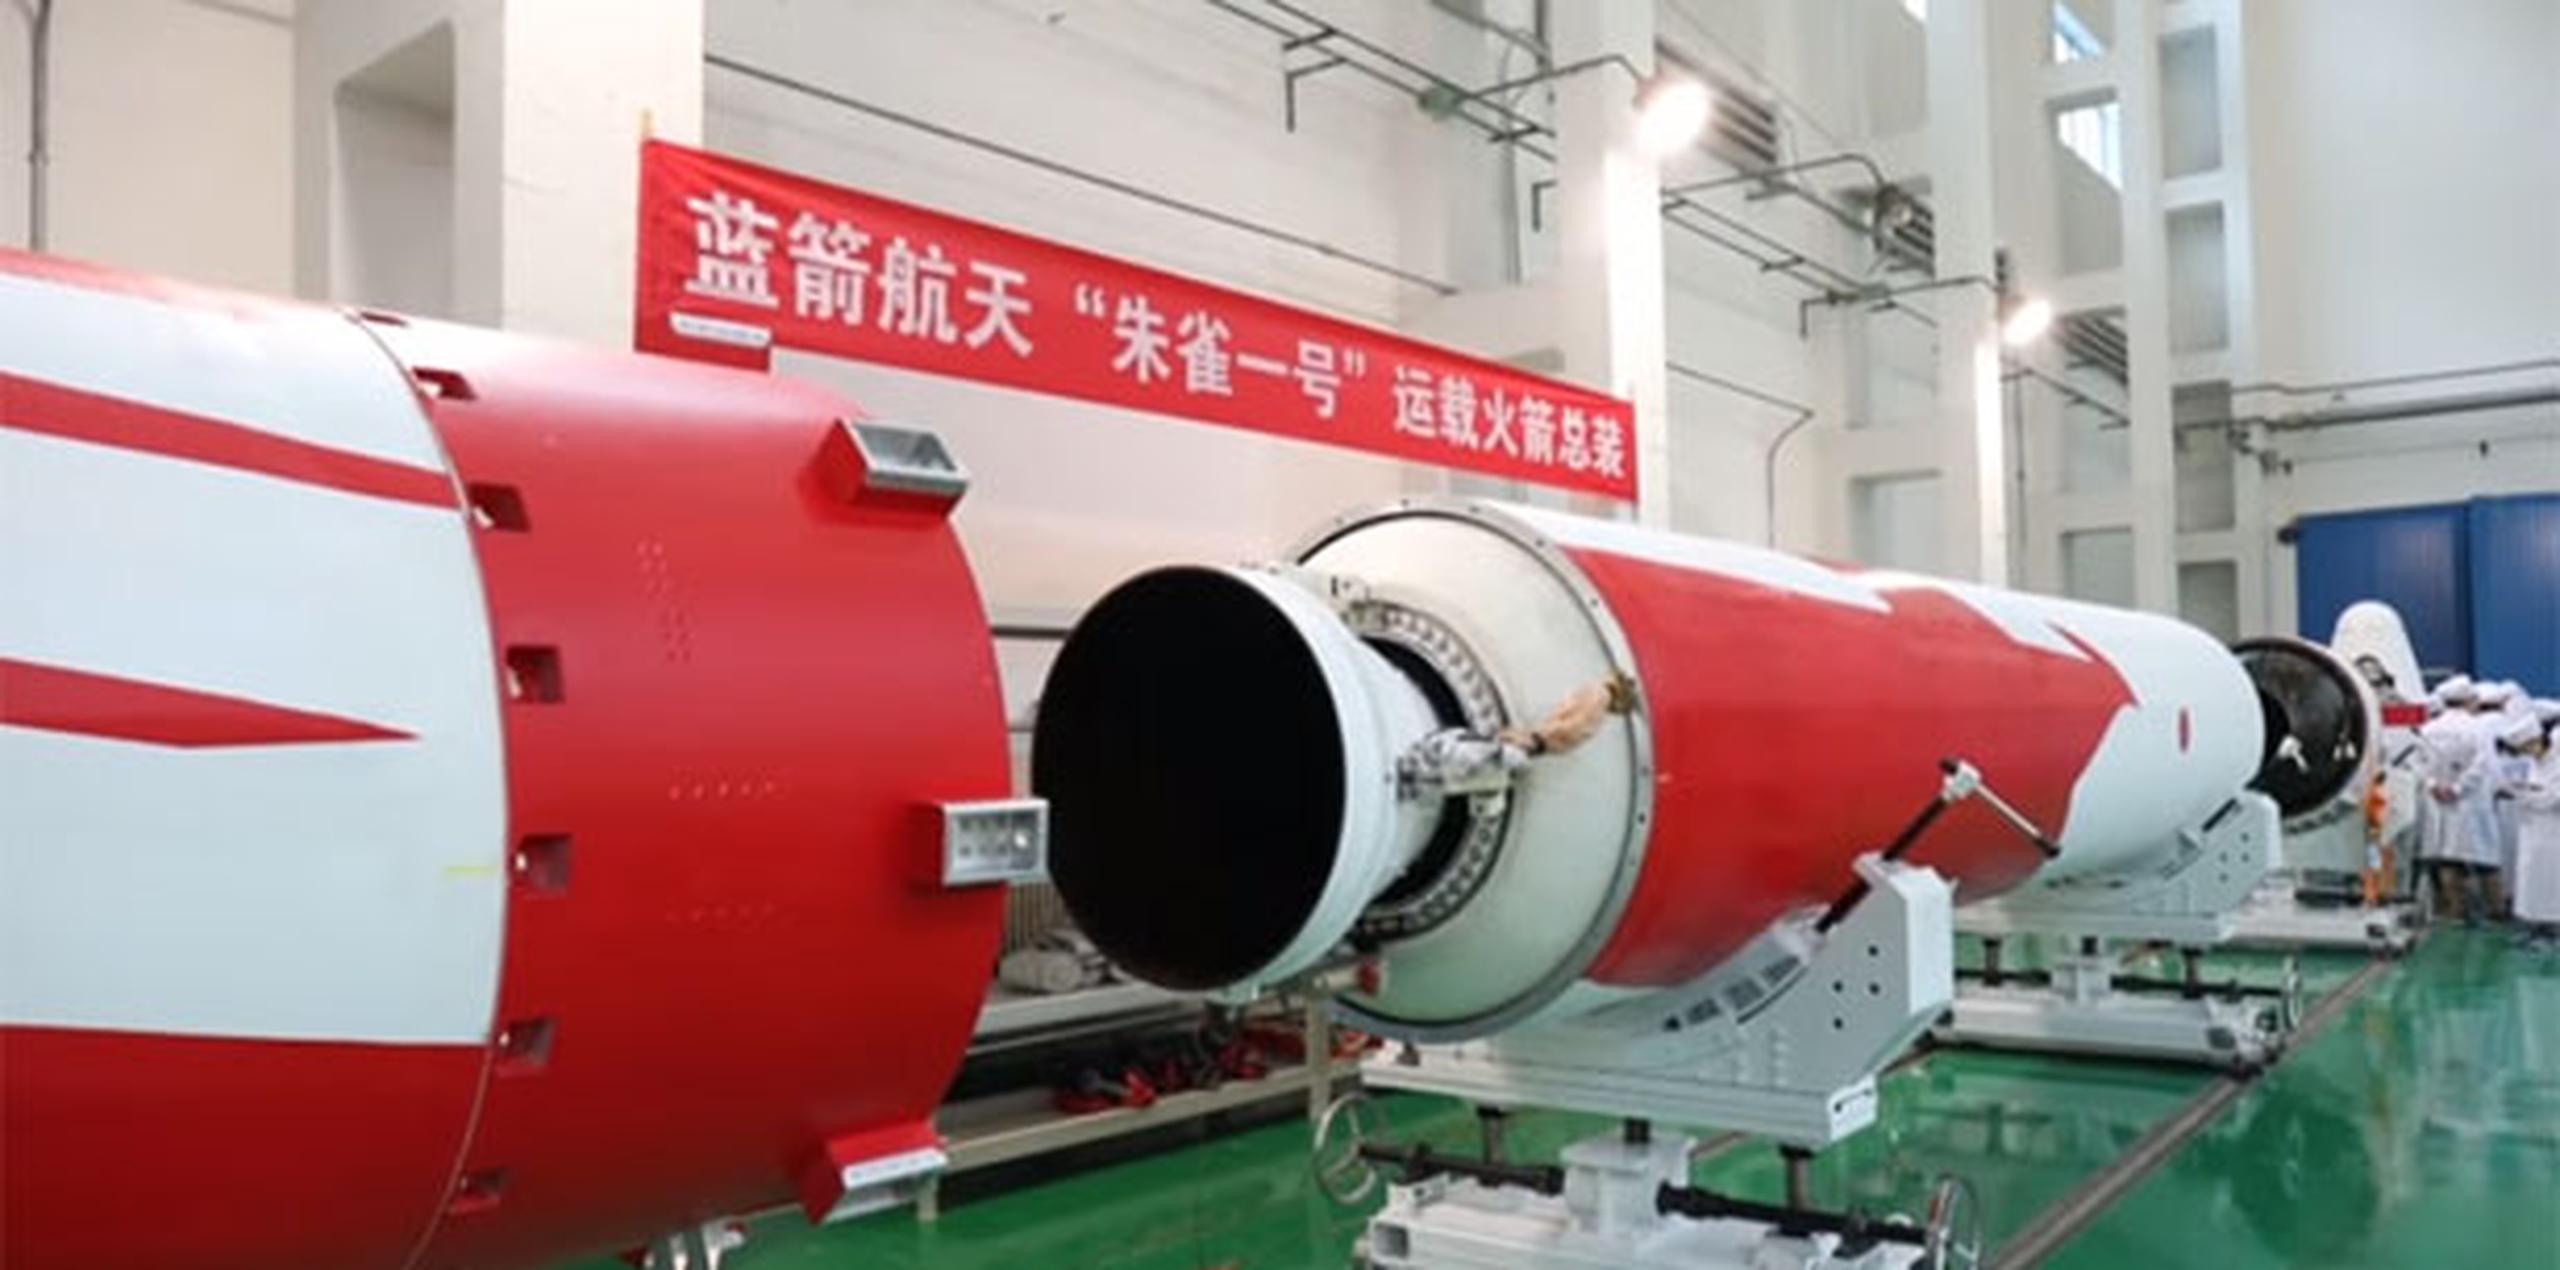 Medios chinos publicaron que el cohete portaba un satélite para la televisora estatal CCTV. (Captura)